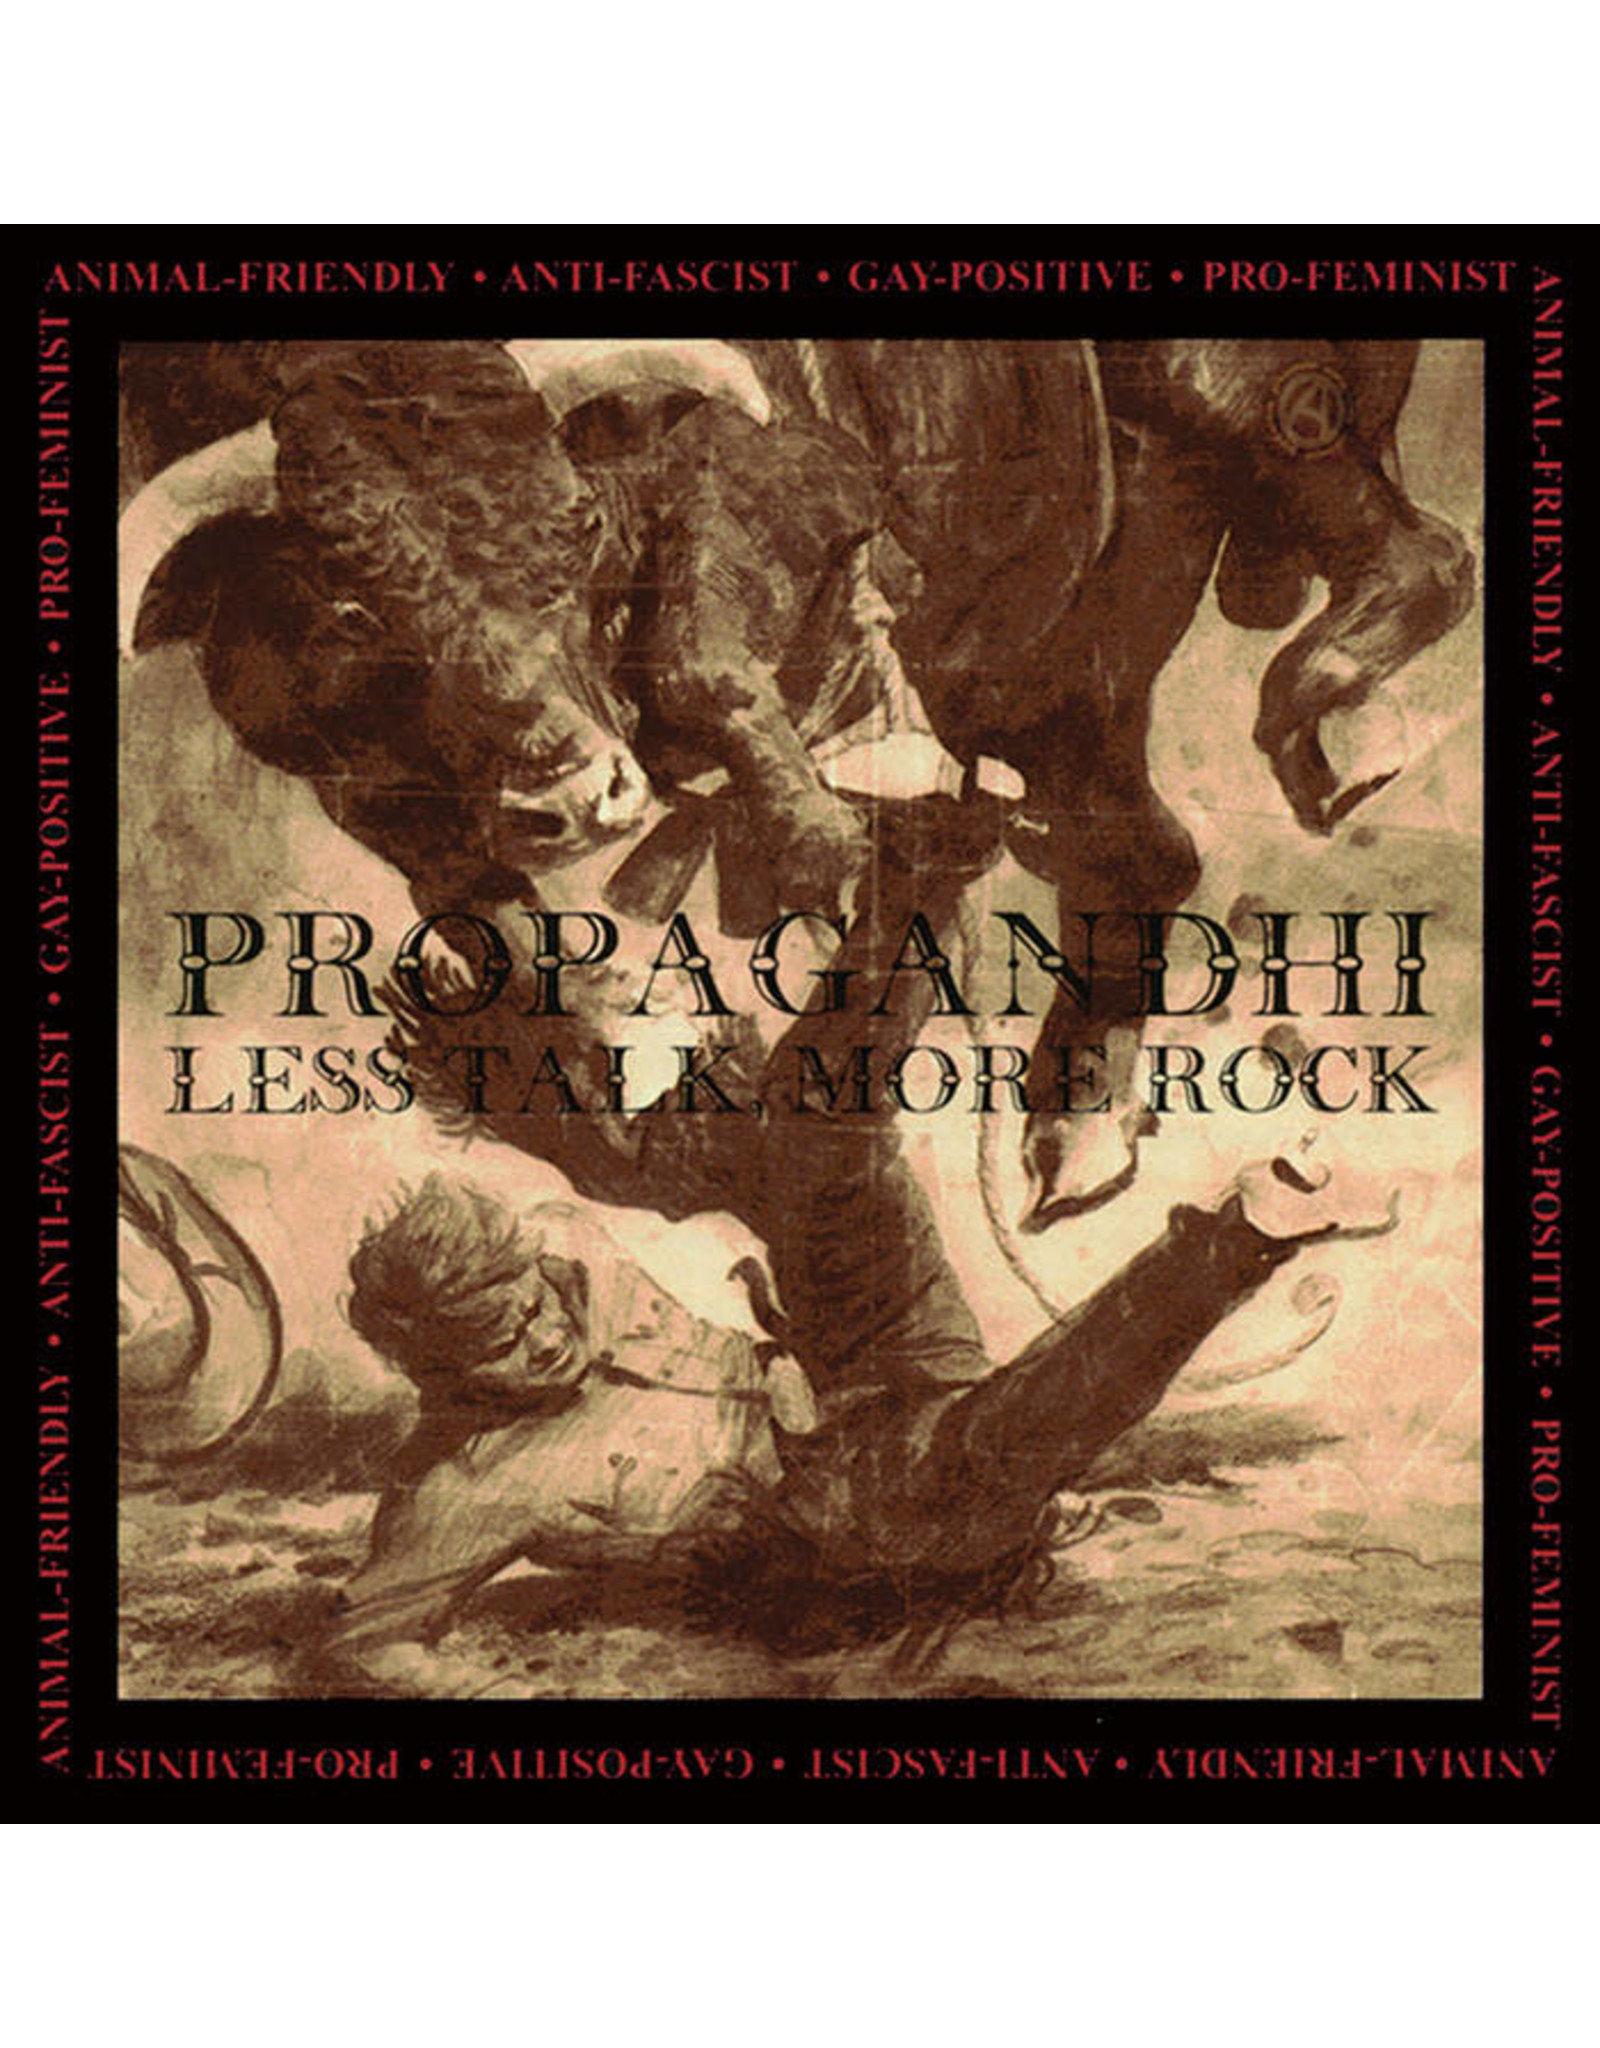 Fat Wreck Propagandhi: Less Talk, More Rock LP